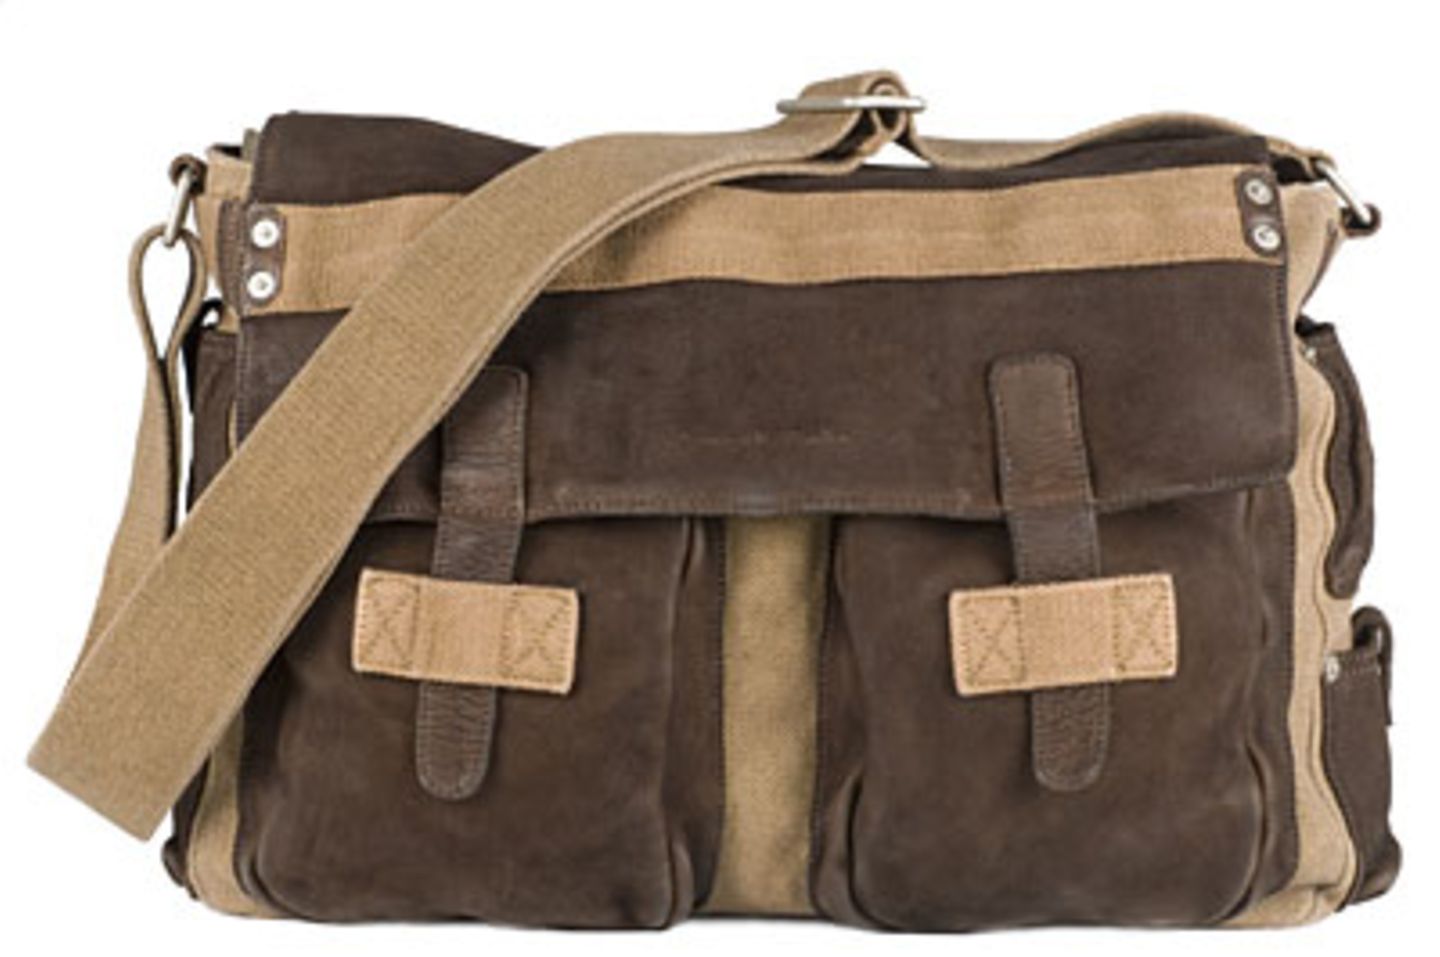 Praktischer Shoulder Bag in einem stilvollen Mix aus Canvas und Leder. Hersteller: Marc O'PoloPreis: 89,90 Euro